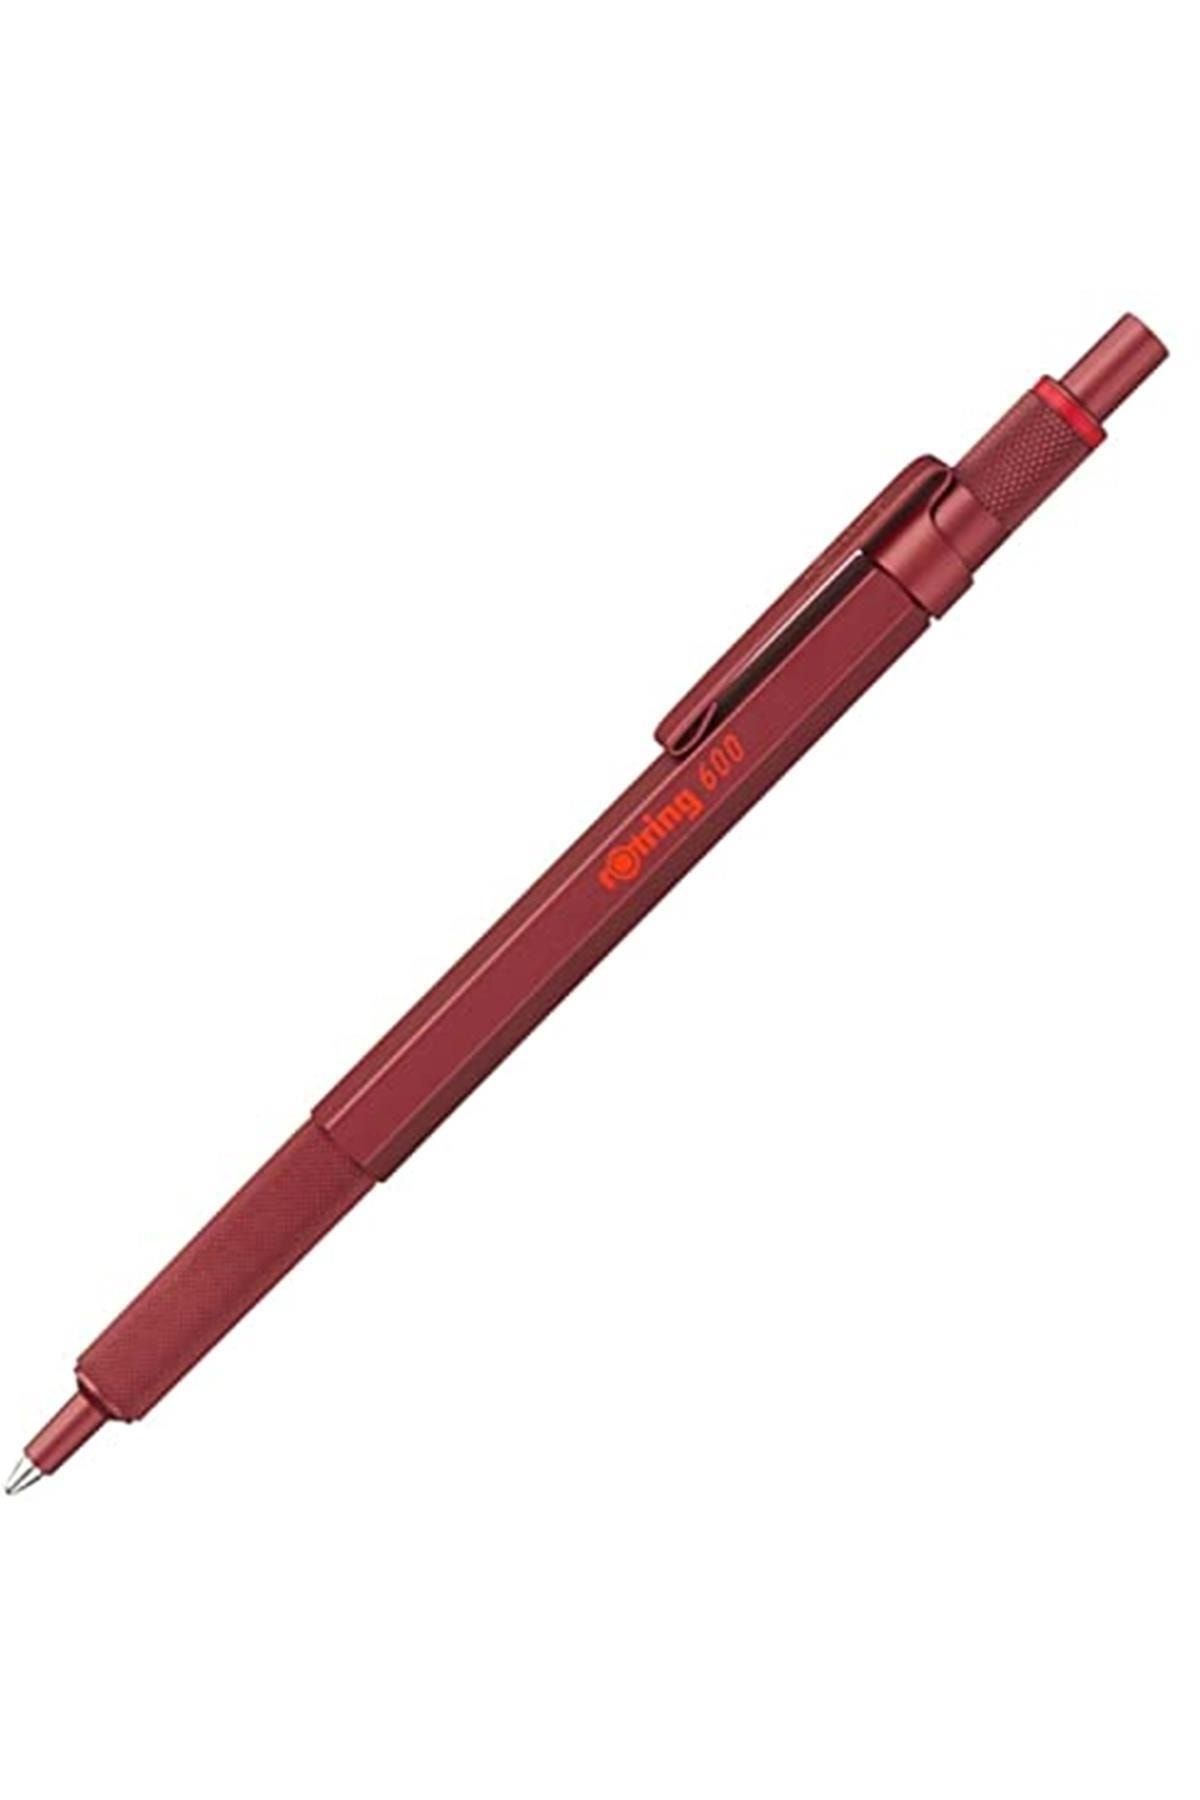 Rotring 600 Tükenmez Kalem, Kırmızı